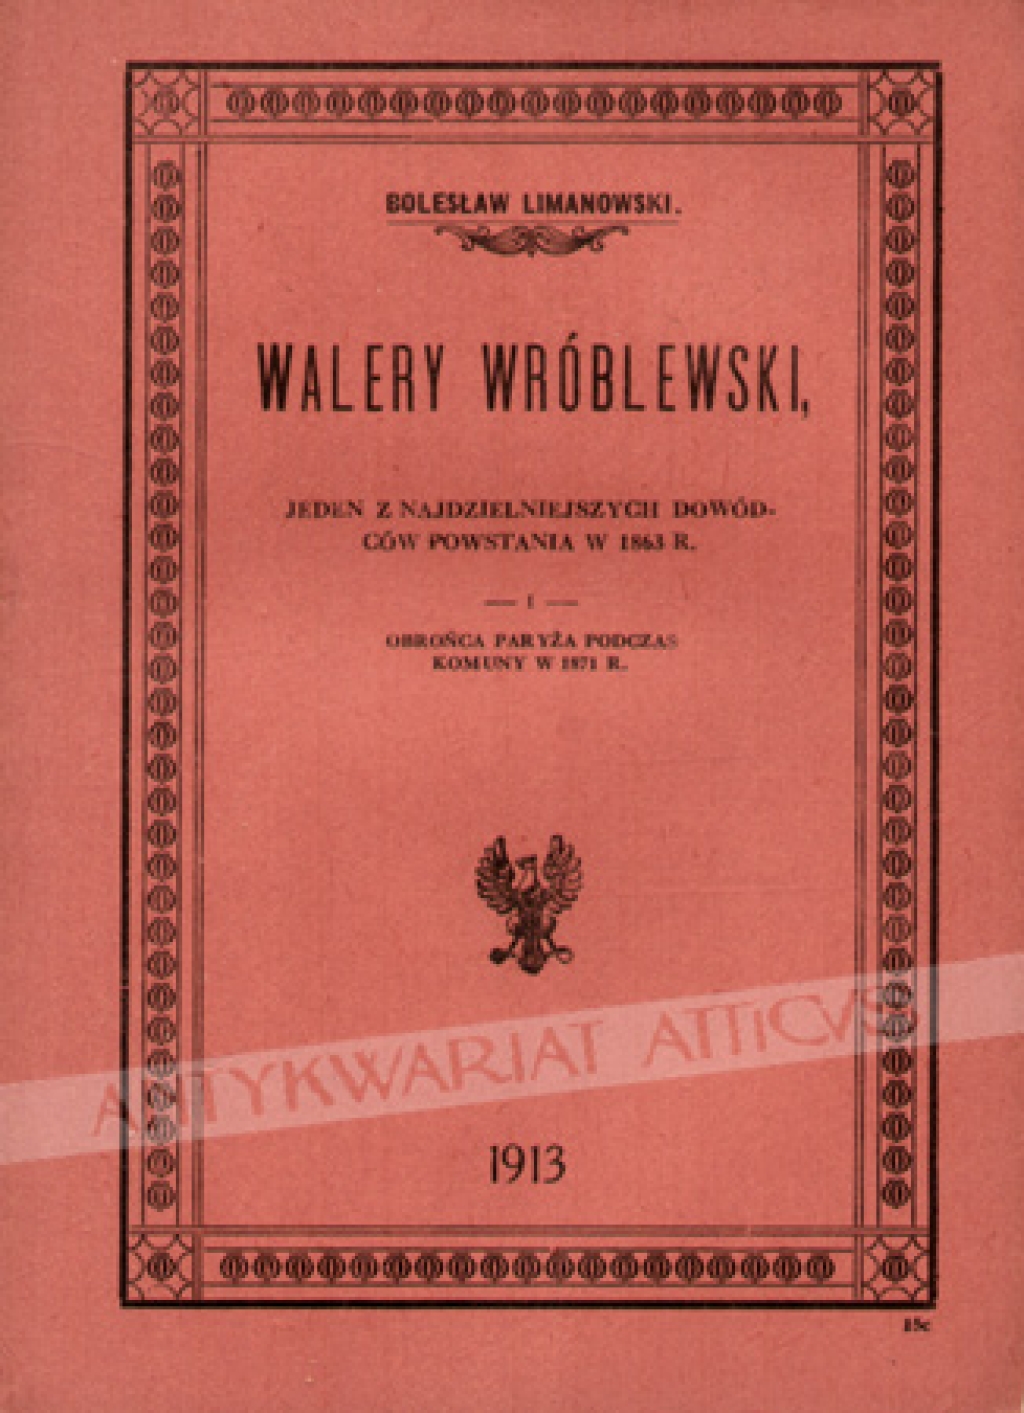 Walery Wróblewski. Jeden z najdzielniejszych dowódców powstania w 1863 r. i obrońca Paryża podczas Komuny w 1871 r.